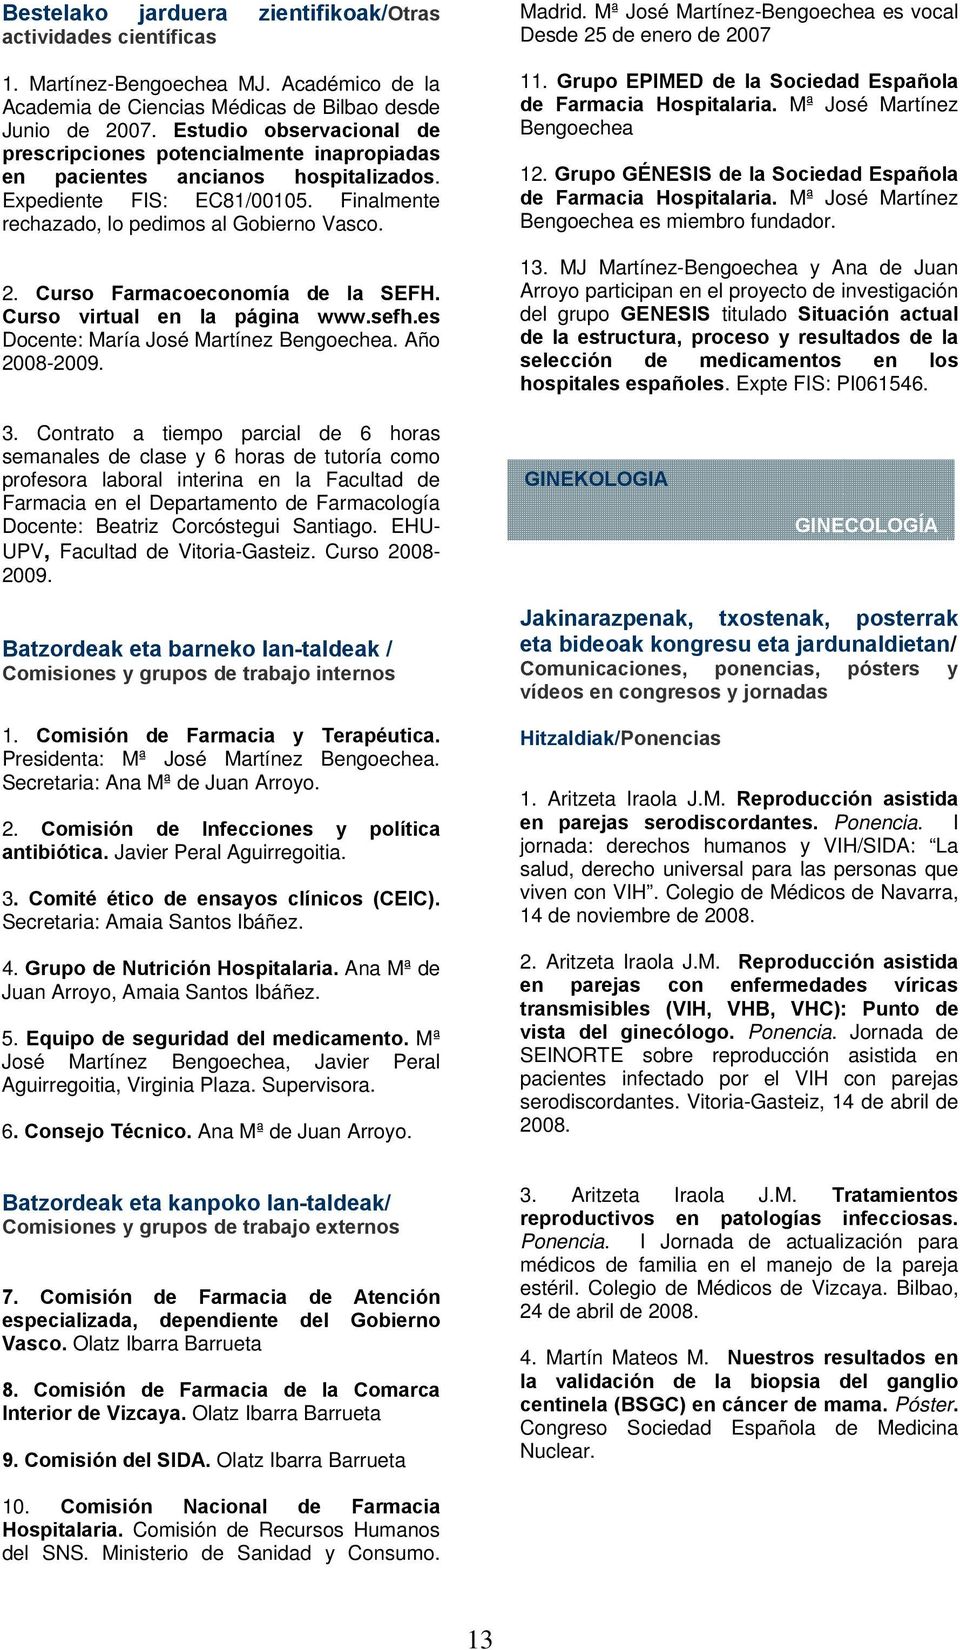 Curso Farmacoeconomía de la SEFH. Curso virtual en la página www.sefh.es Docente: María José Martínez Bengoechea. Año 2008-2009. Madrid.